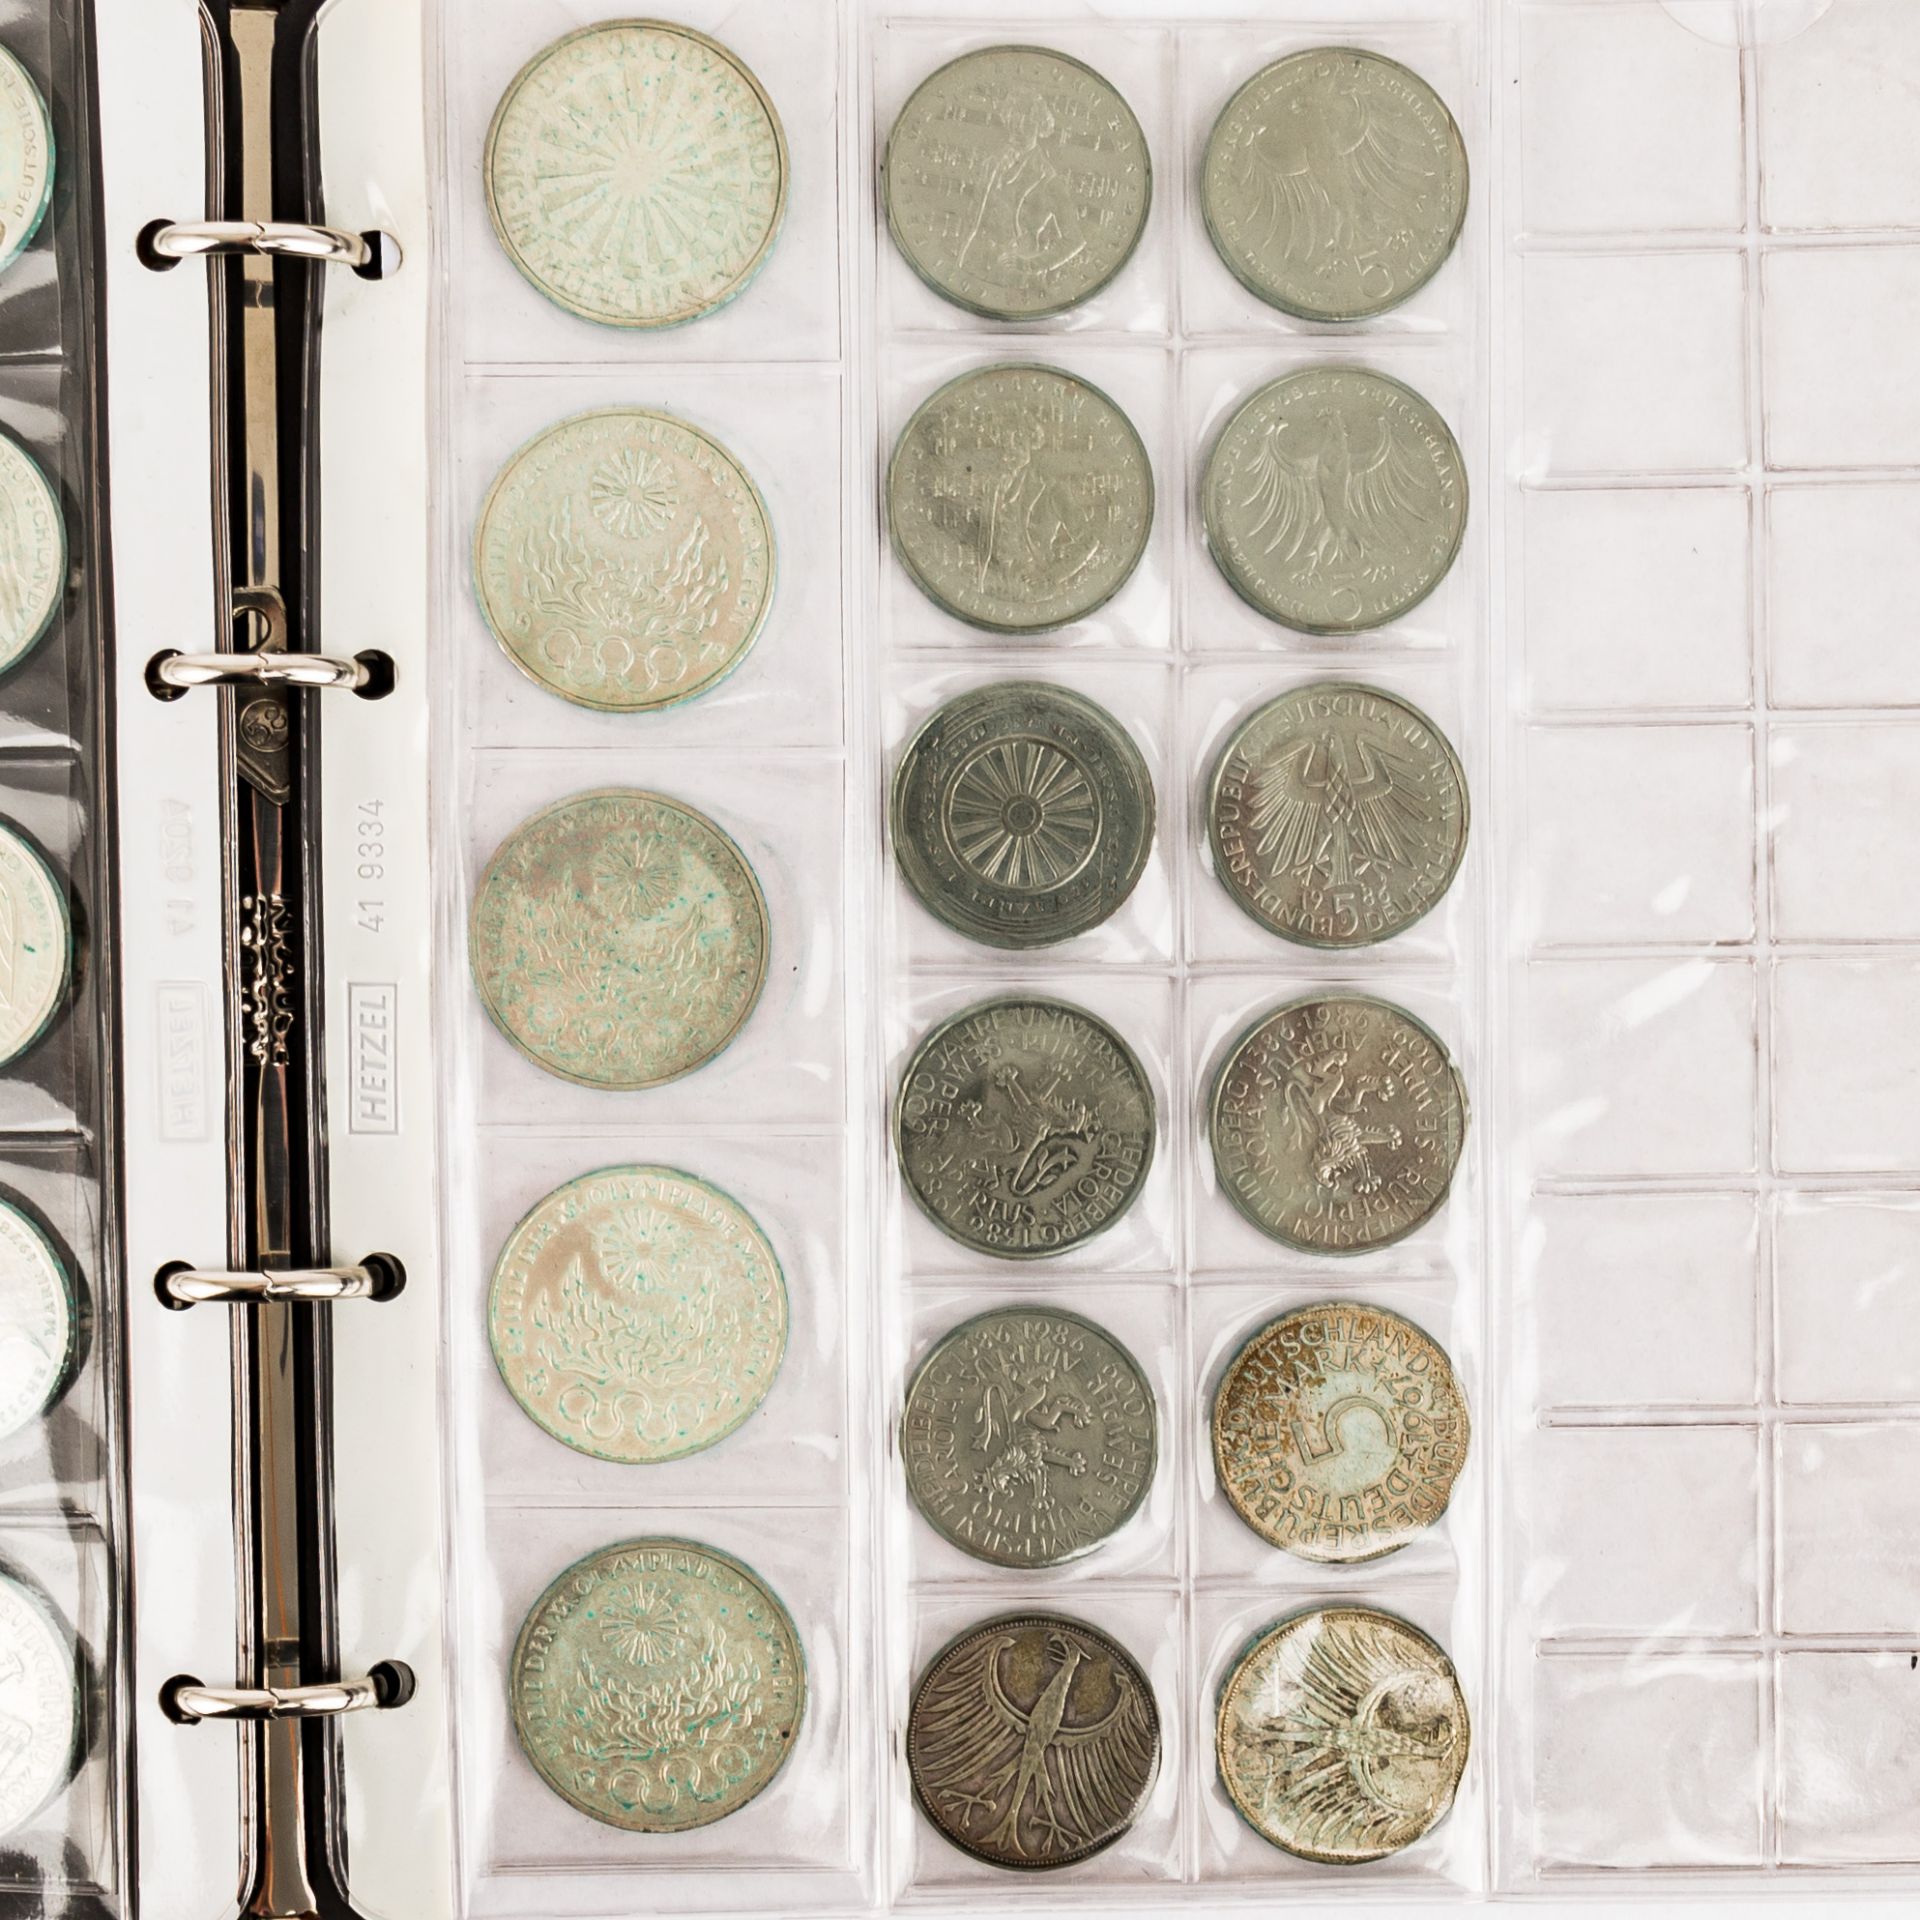 Münzen und Medaillen, BRD Gedenkmünzen,Österreich Schillinge, Medaillen 40 Jahre BRD fast nahezu 500 - Bild 11 aus 12